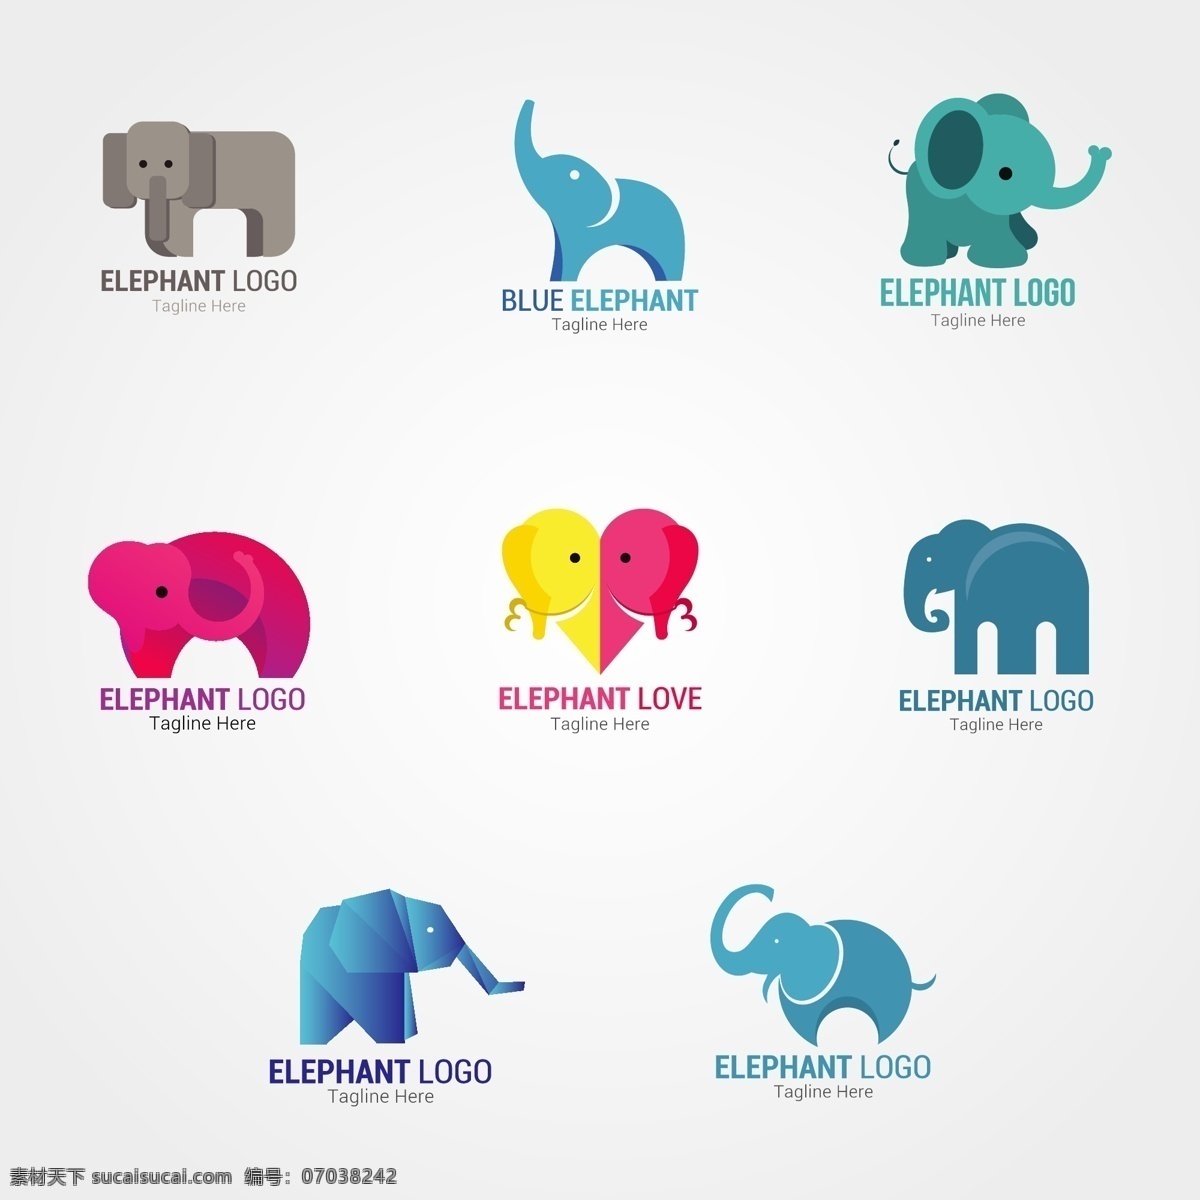 大象图标 矢量素材 矢量图 设计素材 创意设计 动物 标志 logo 图标 大象 小象 折纸 icon 标志图标 其他图标